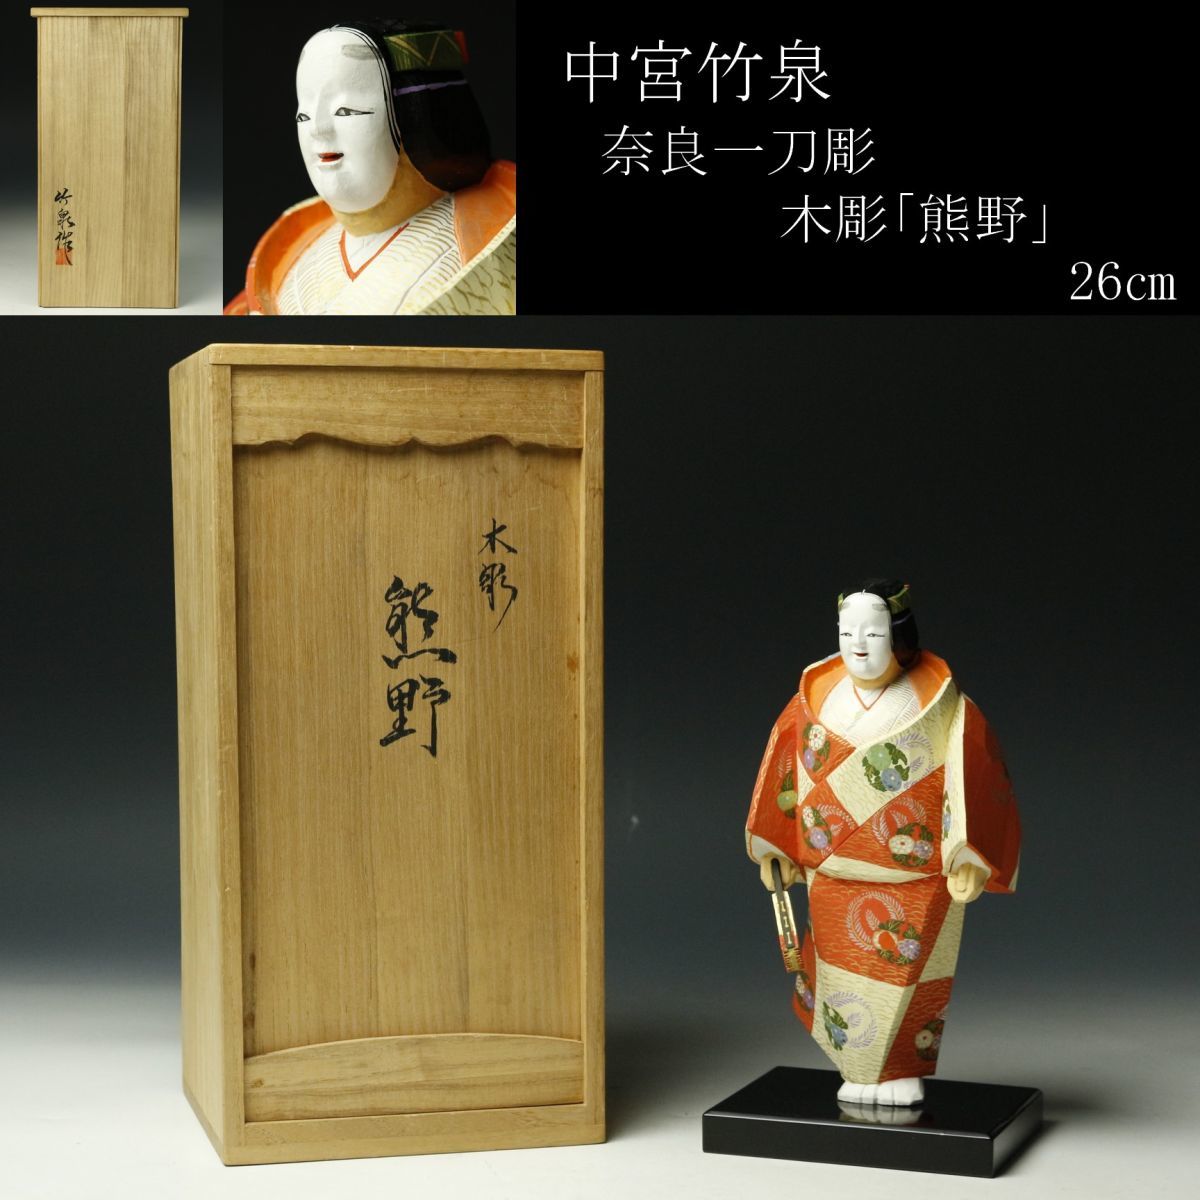 奈良一刀彫 竹泉 作 「一刀彫 猩々」 共箱 木彫 彩色 日本人形 置物 